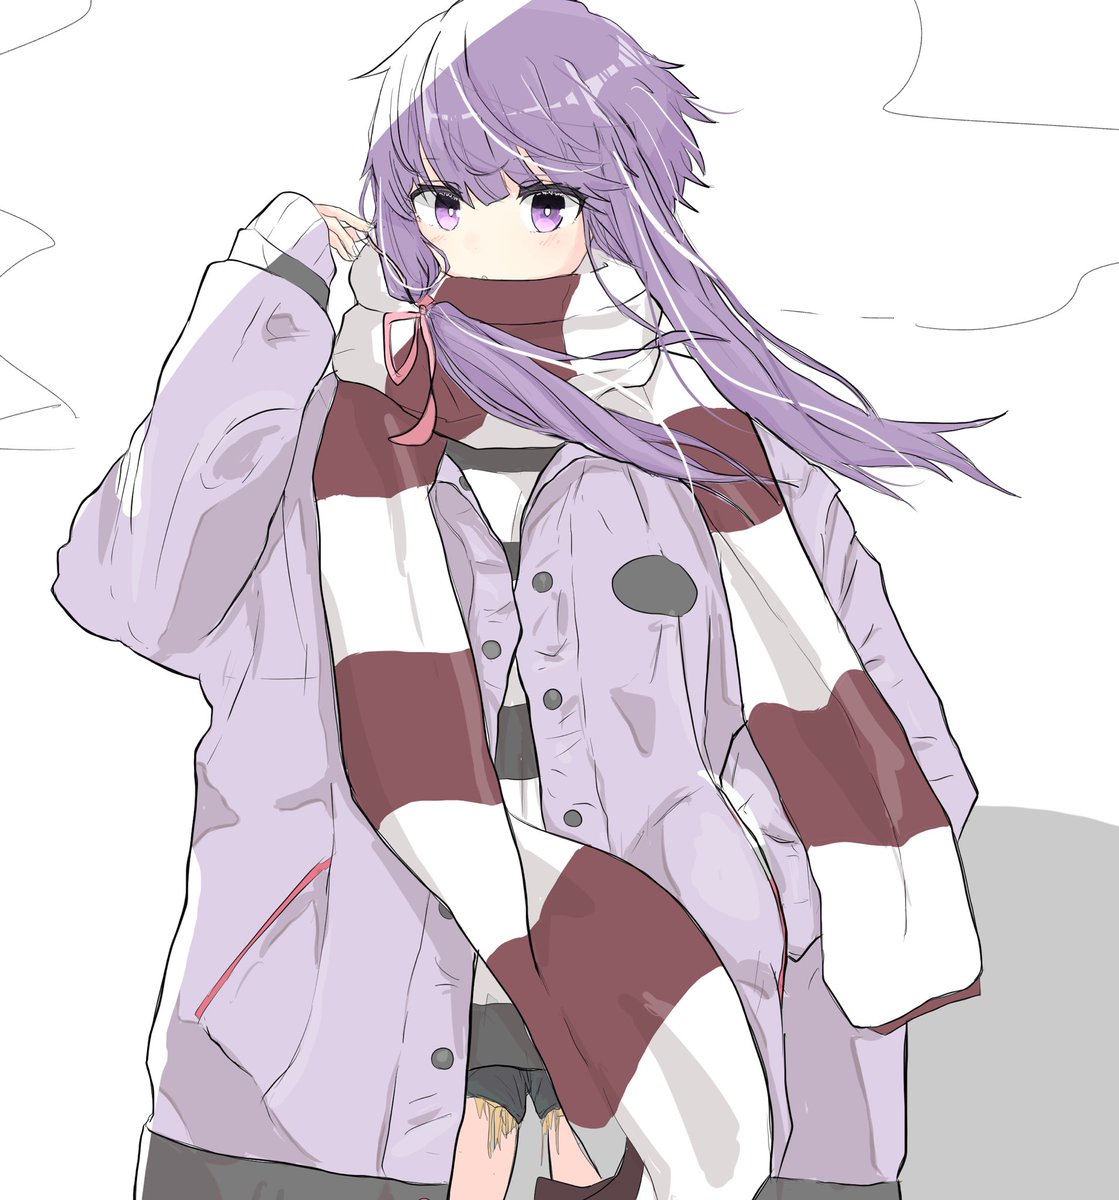 yuzuki yukari 1girl scarf solo purple eyes purple hair jacket looking at viewer  illustration images